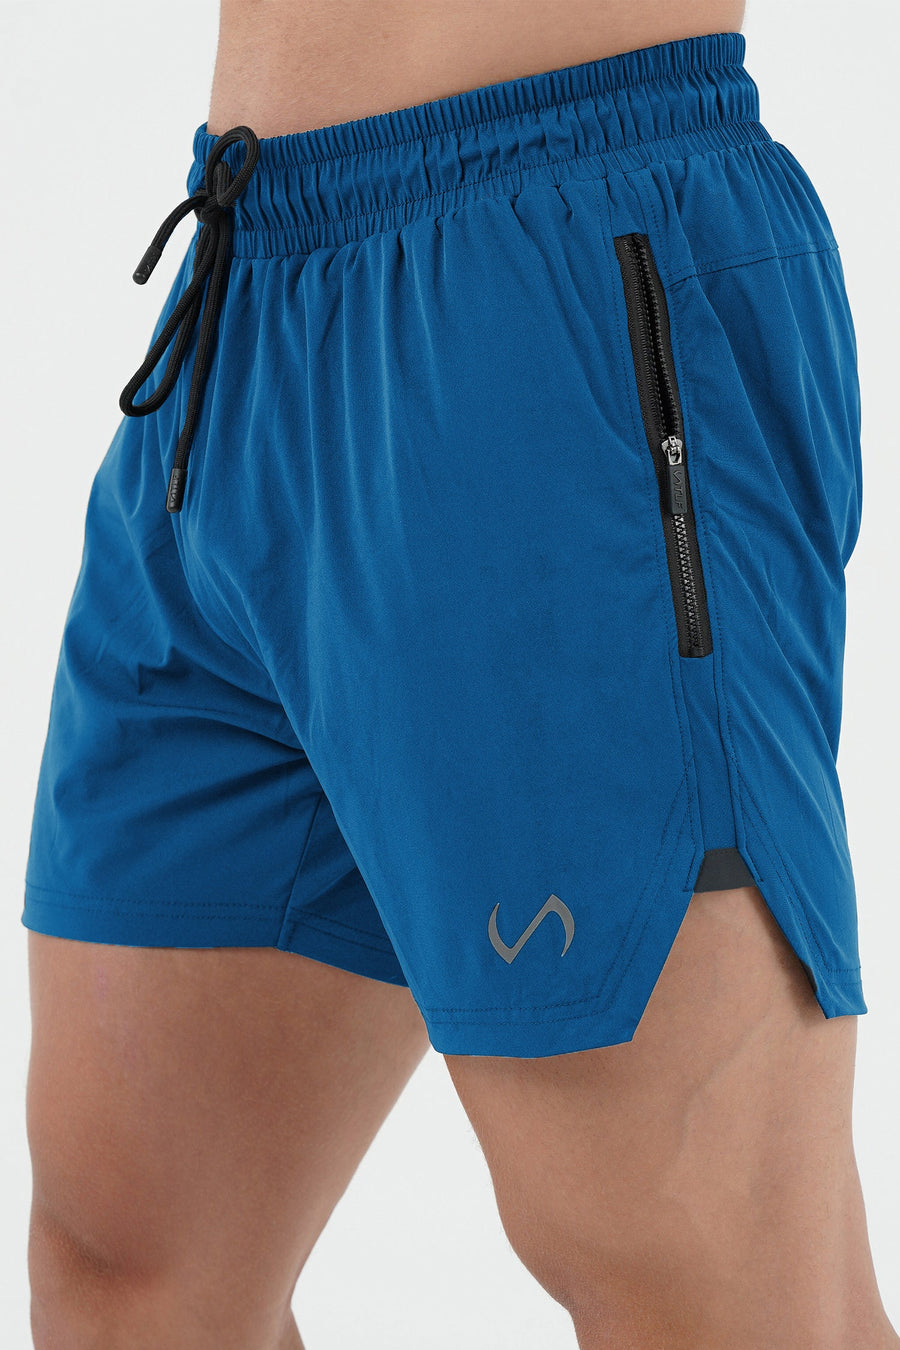 TLF Vital Element 5” Gym Shorts - 5 Inch inseam Athletic Shorts - Blue - 2